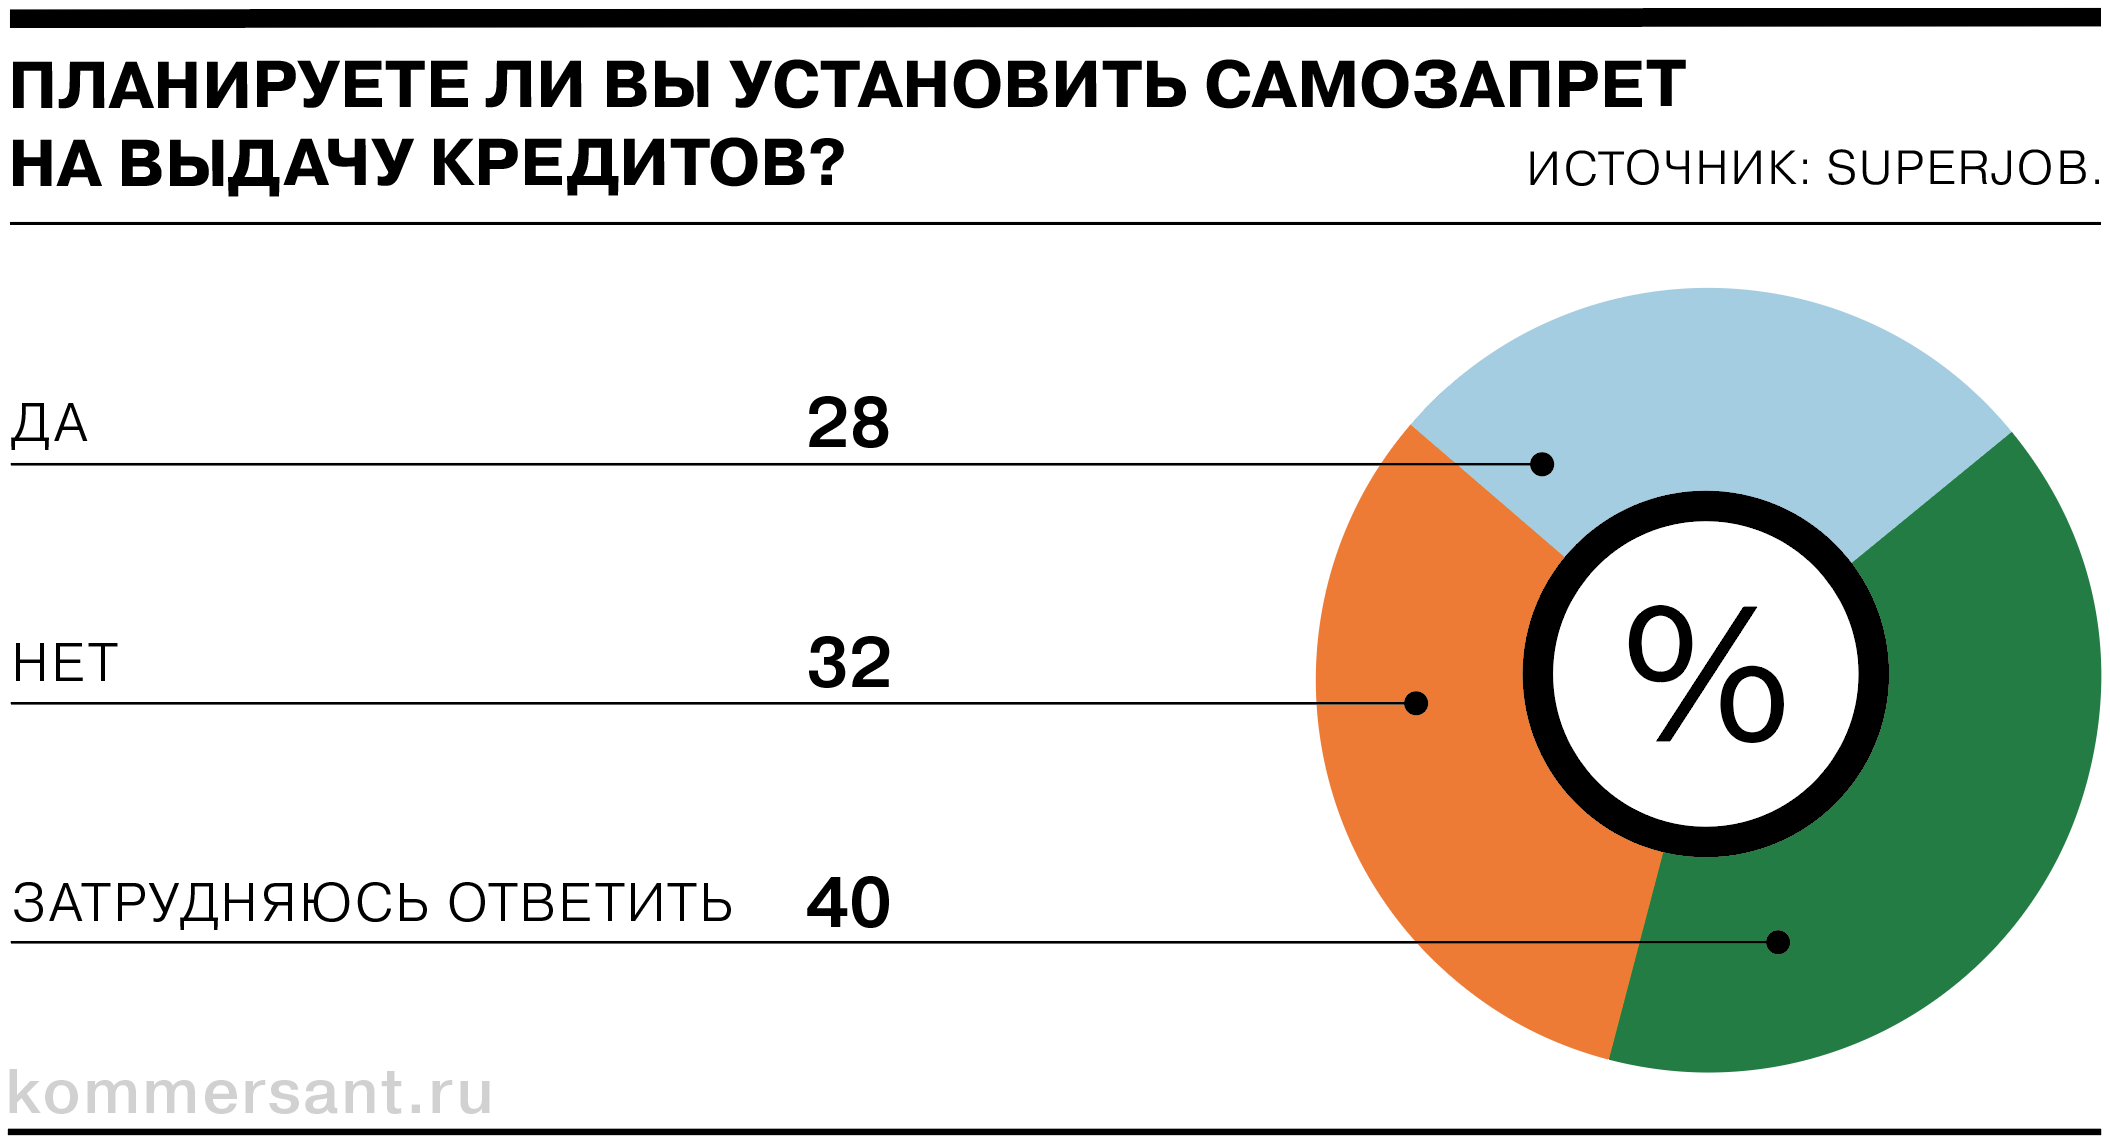 3 из 10 россиян хотят установить самозапрет на выдачу кредитов